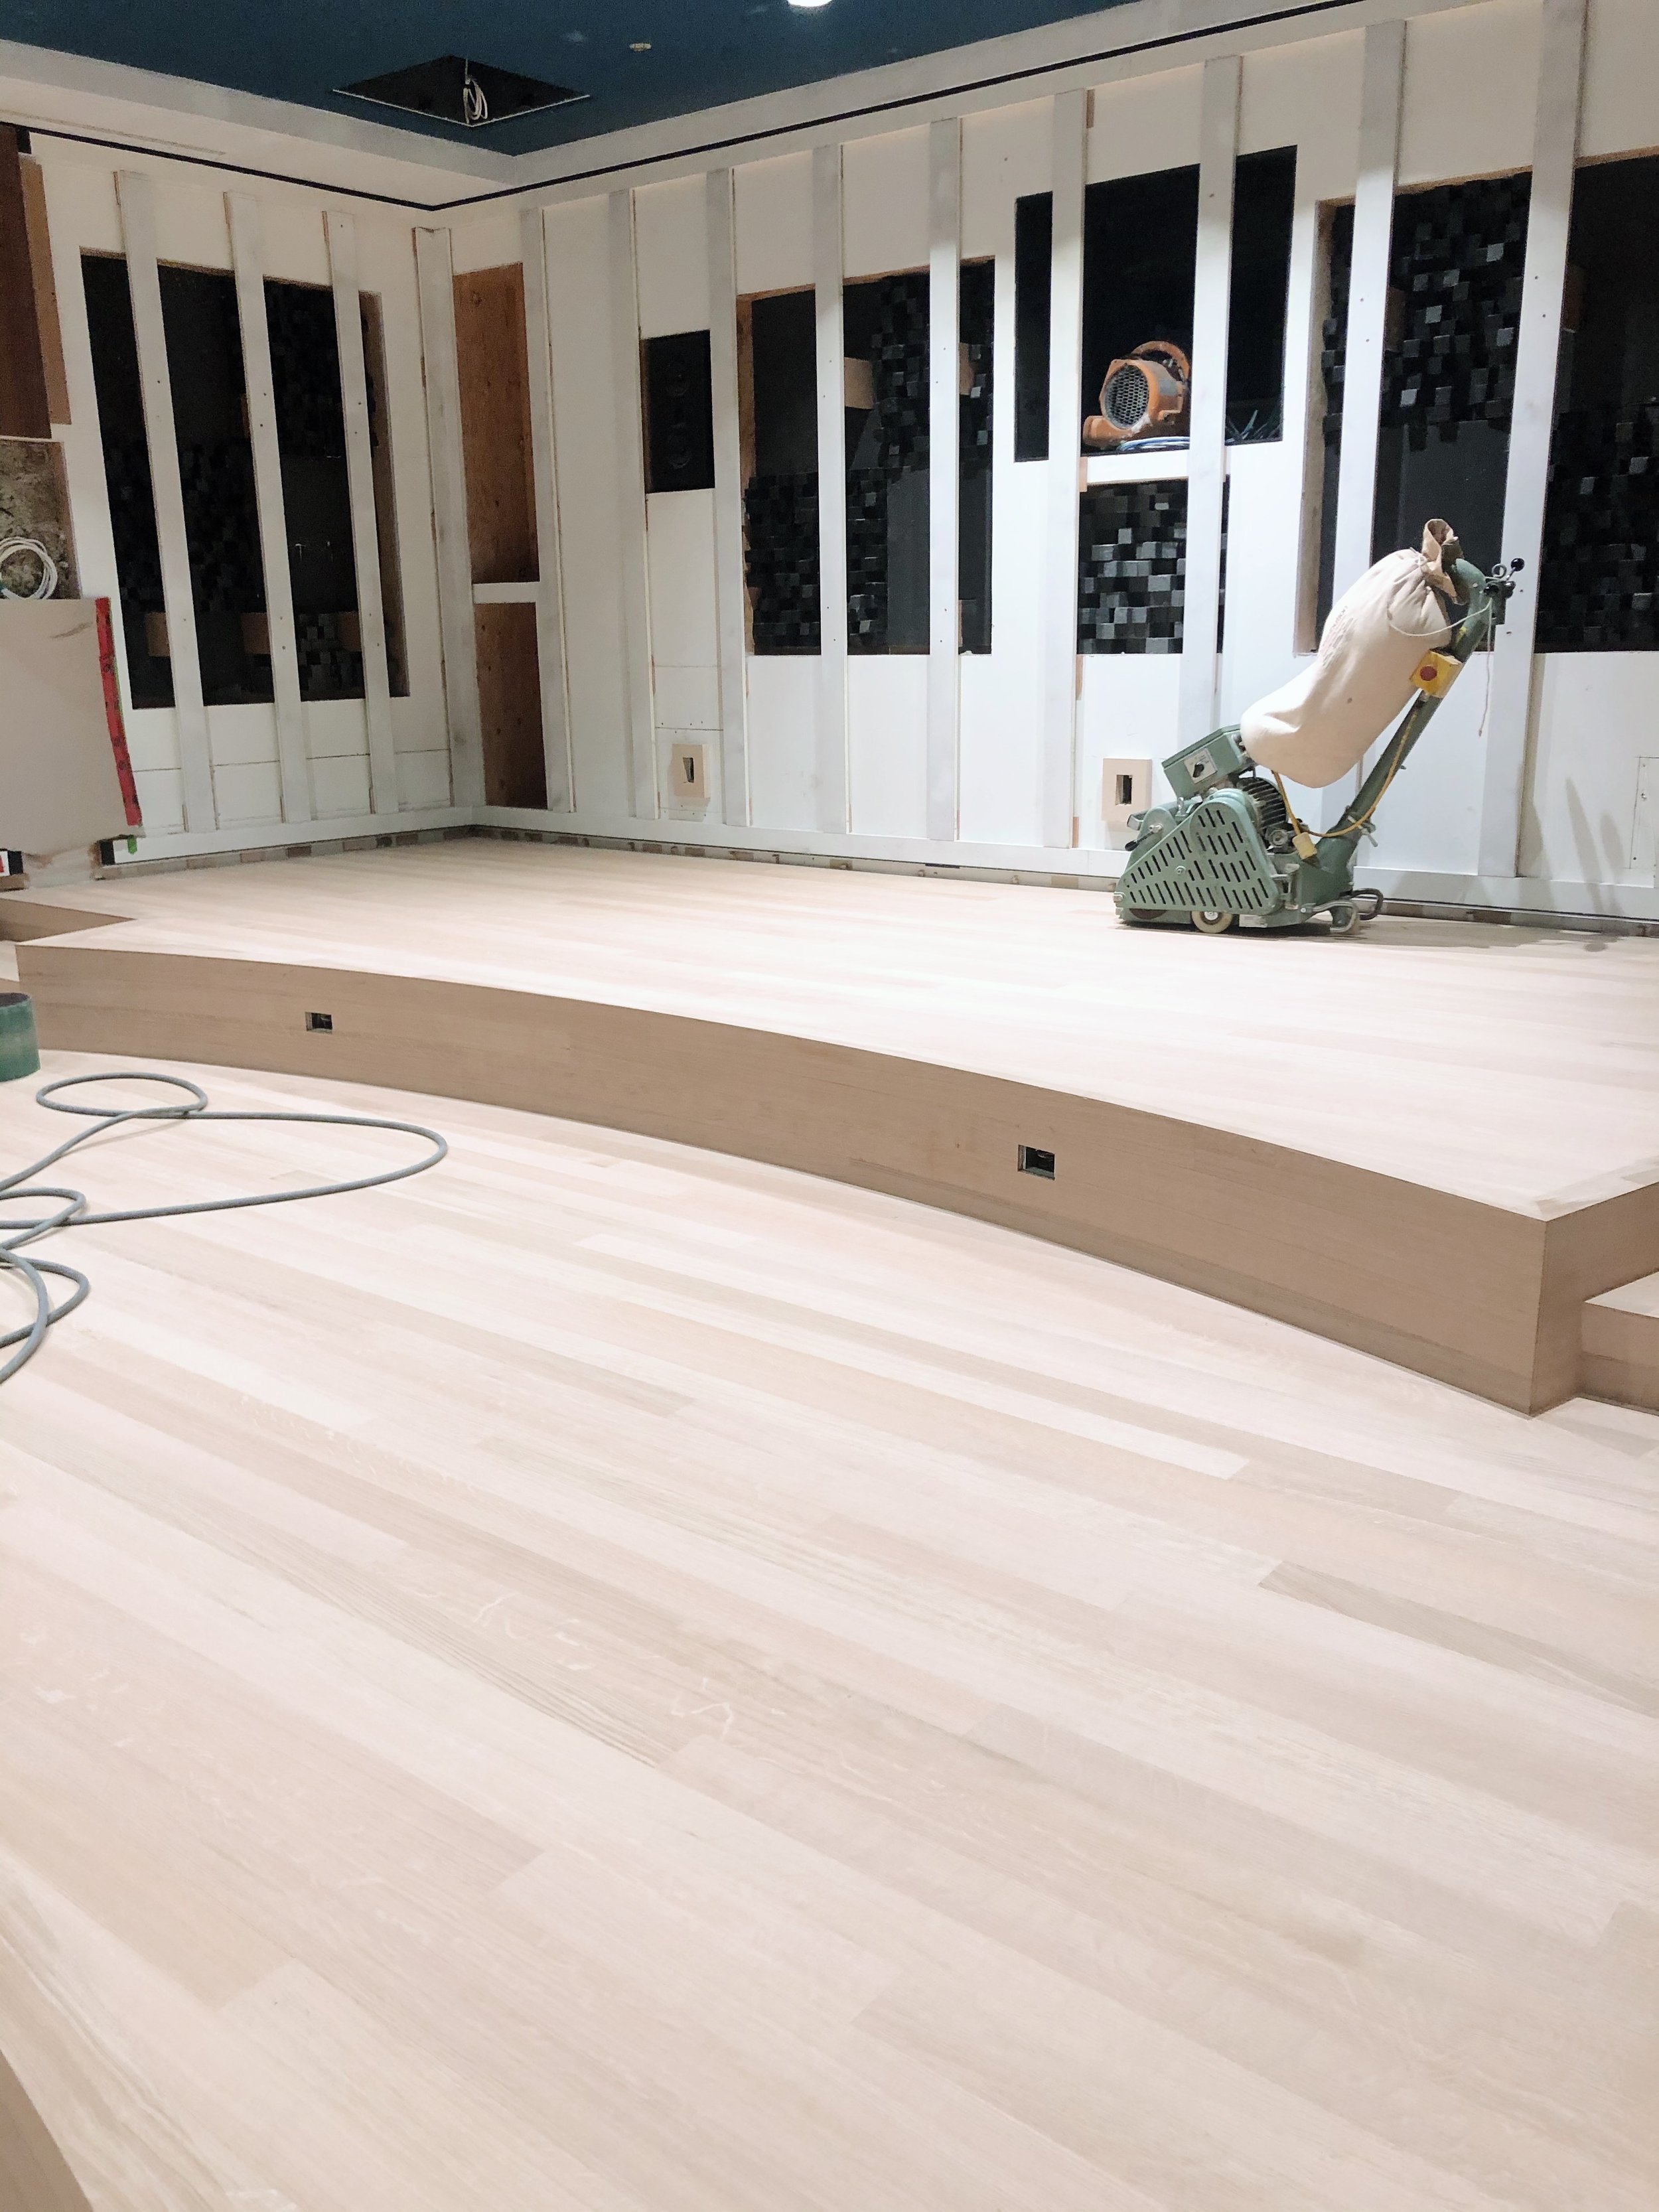 flooring installation greenville sc